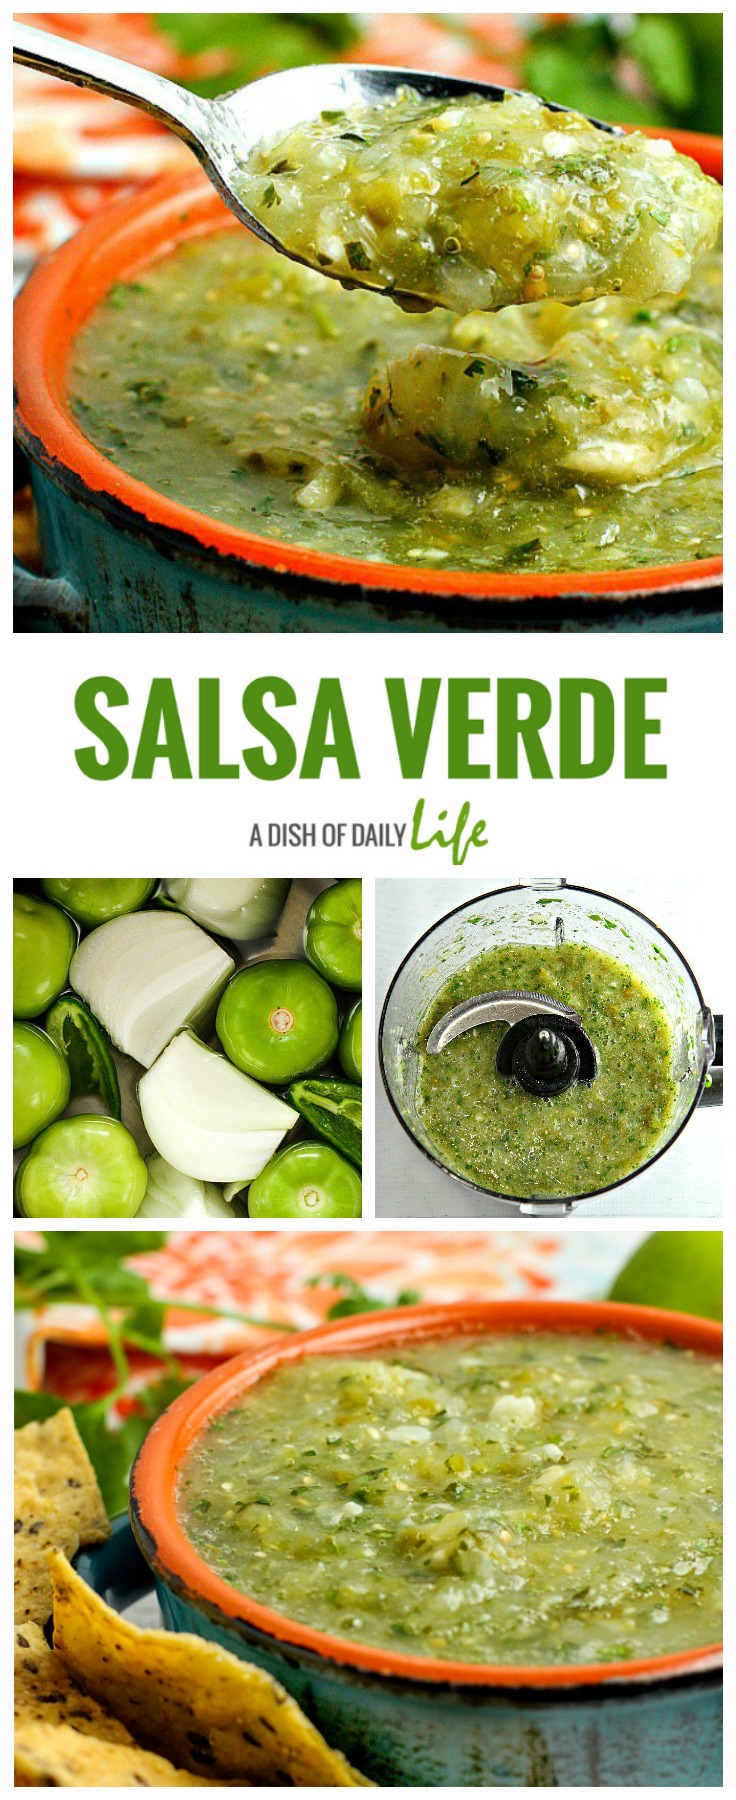 How to make Salsa Verde